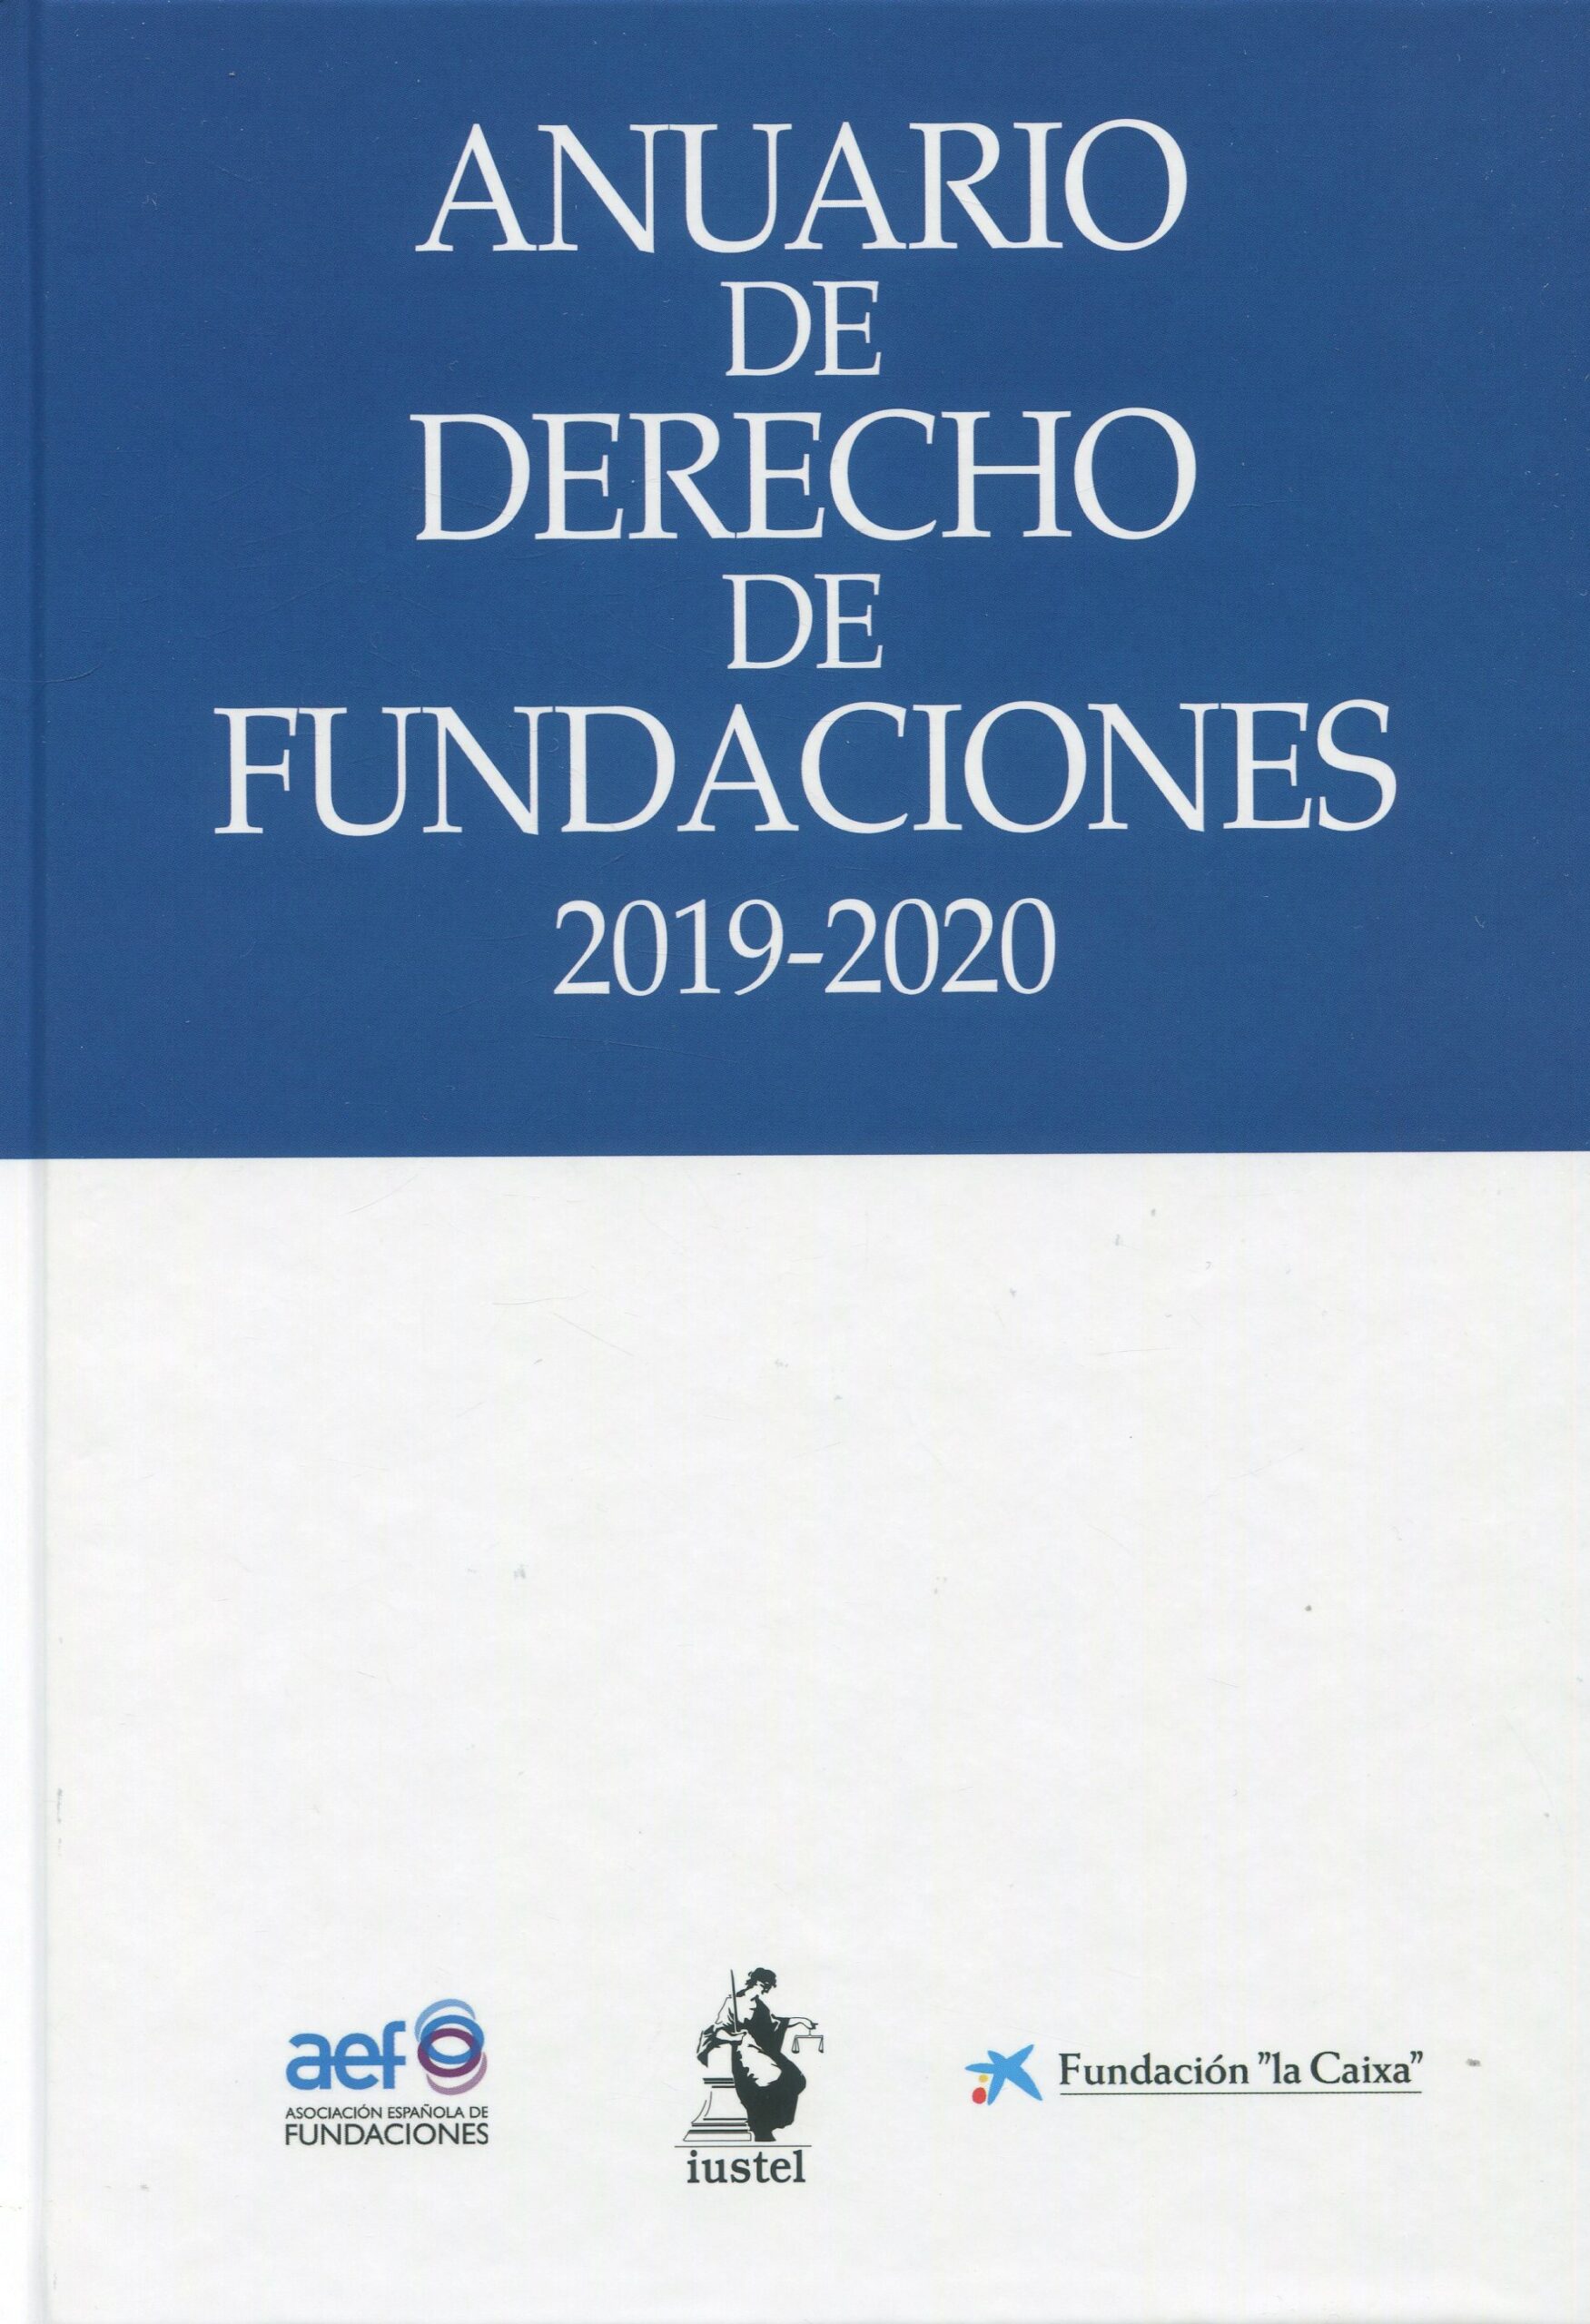 Anuario de Derecho de Fundaciones 2019-2020. 101094176